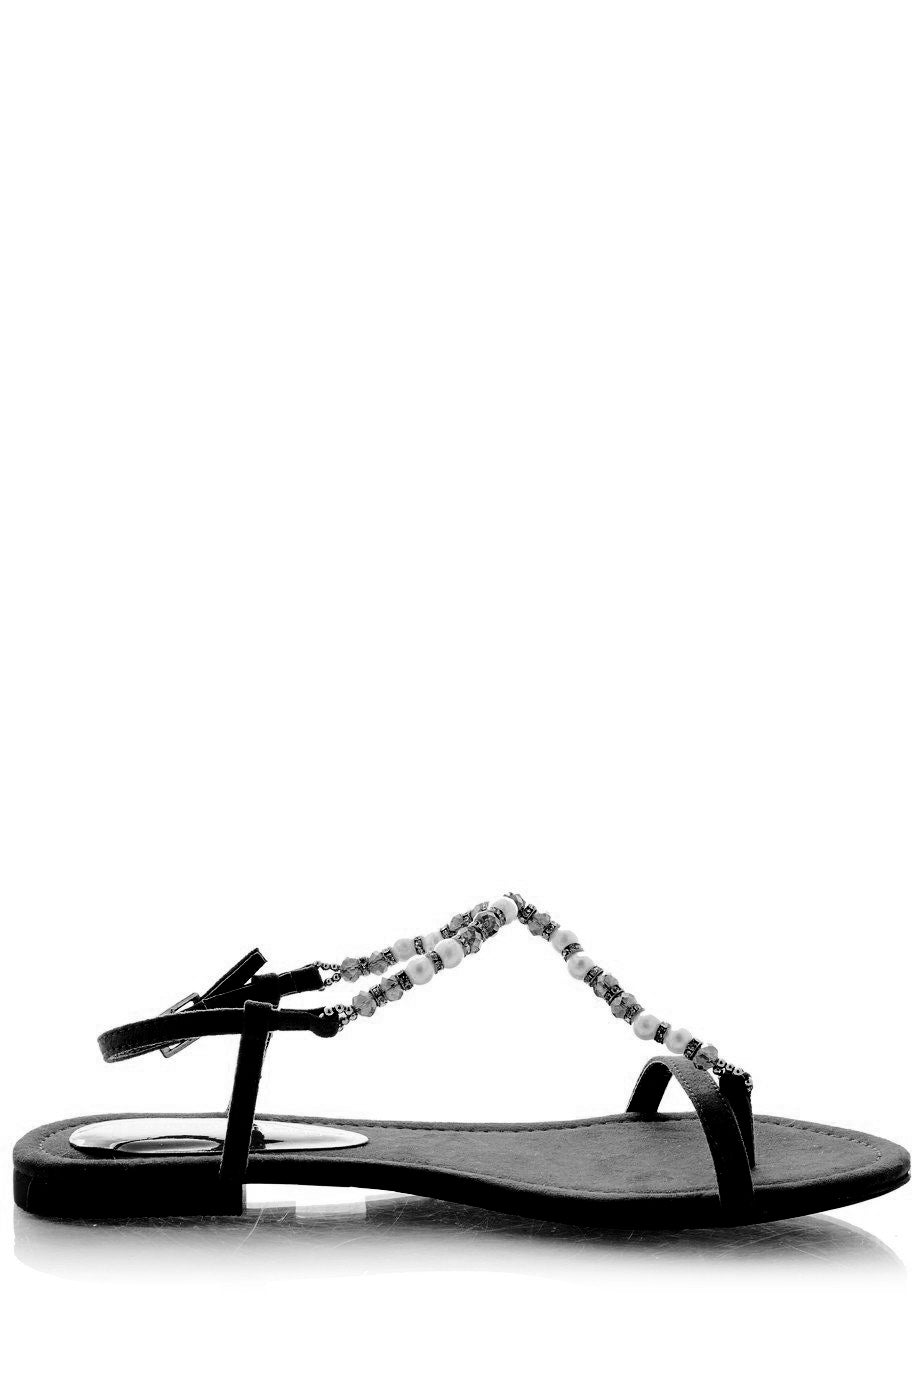 Elatia Black Sandals with Pearls &amp; Crystals